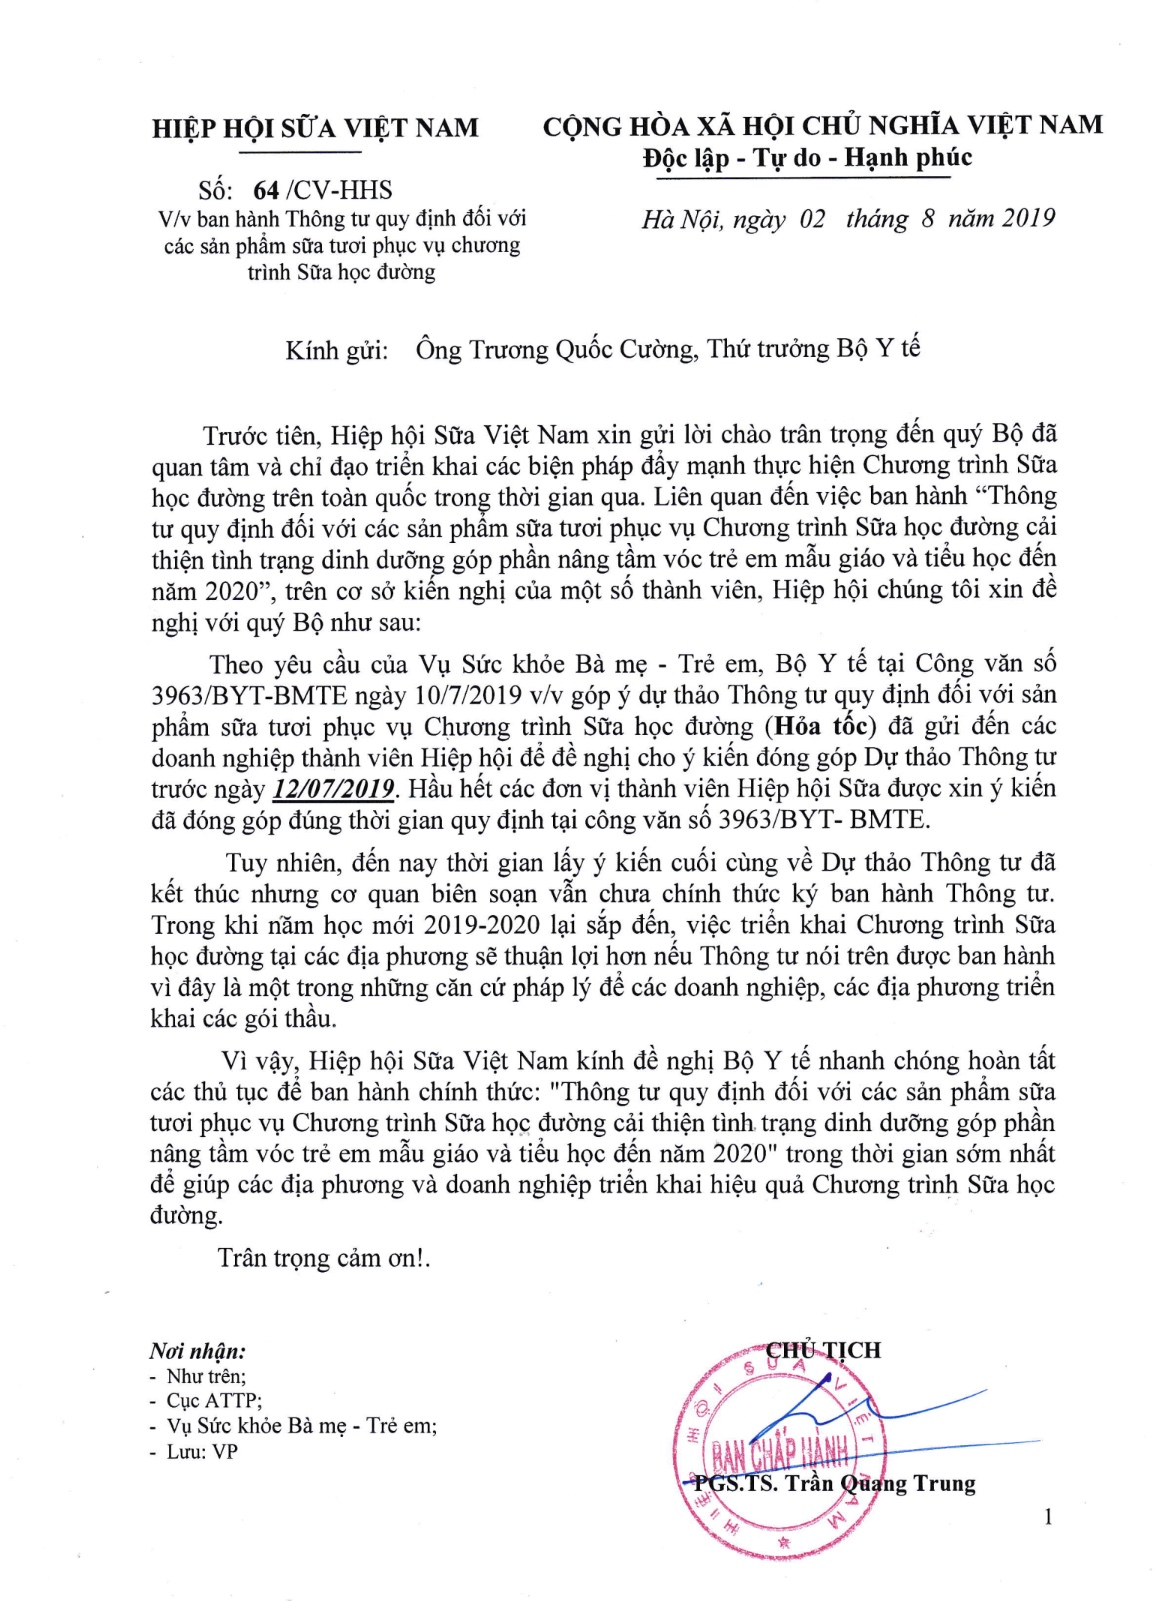 Văn bản của Hiệp hội Sữa Việt Nam gửi Bộ Y tế. Ảnh: TTTĐ